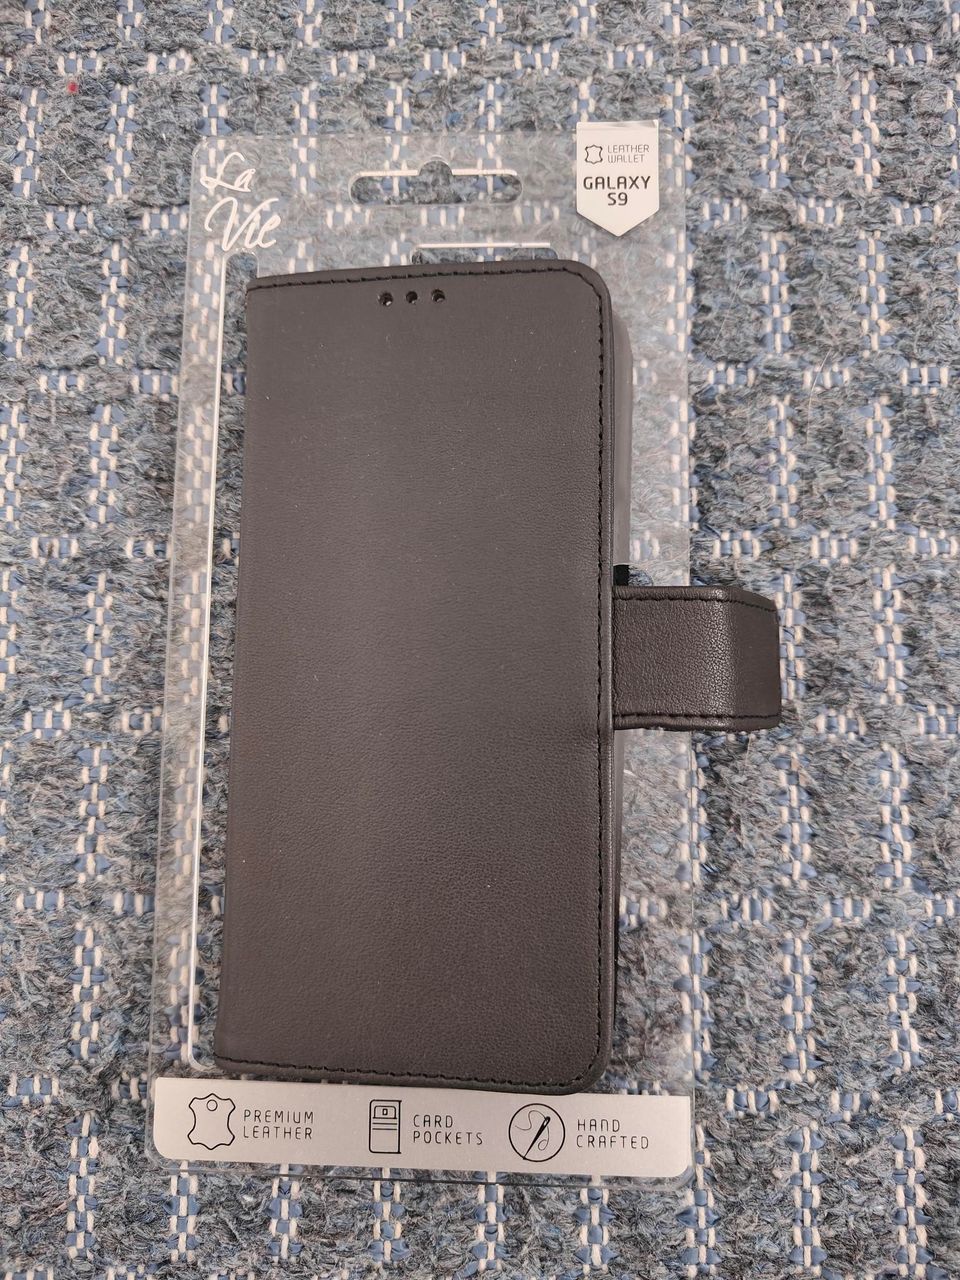 Samsung Galaxy S9 suojakotelo käyttämätön